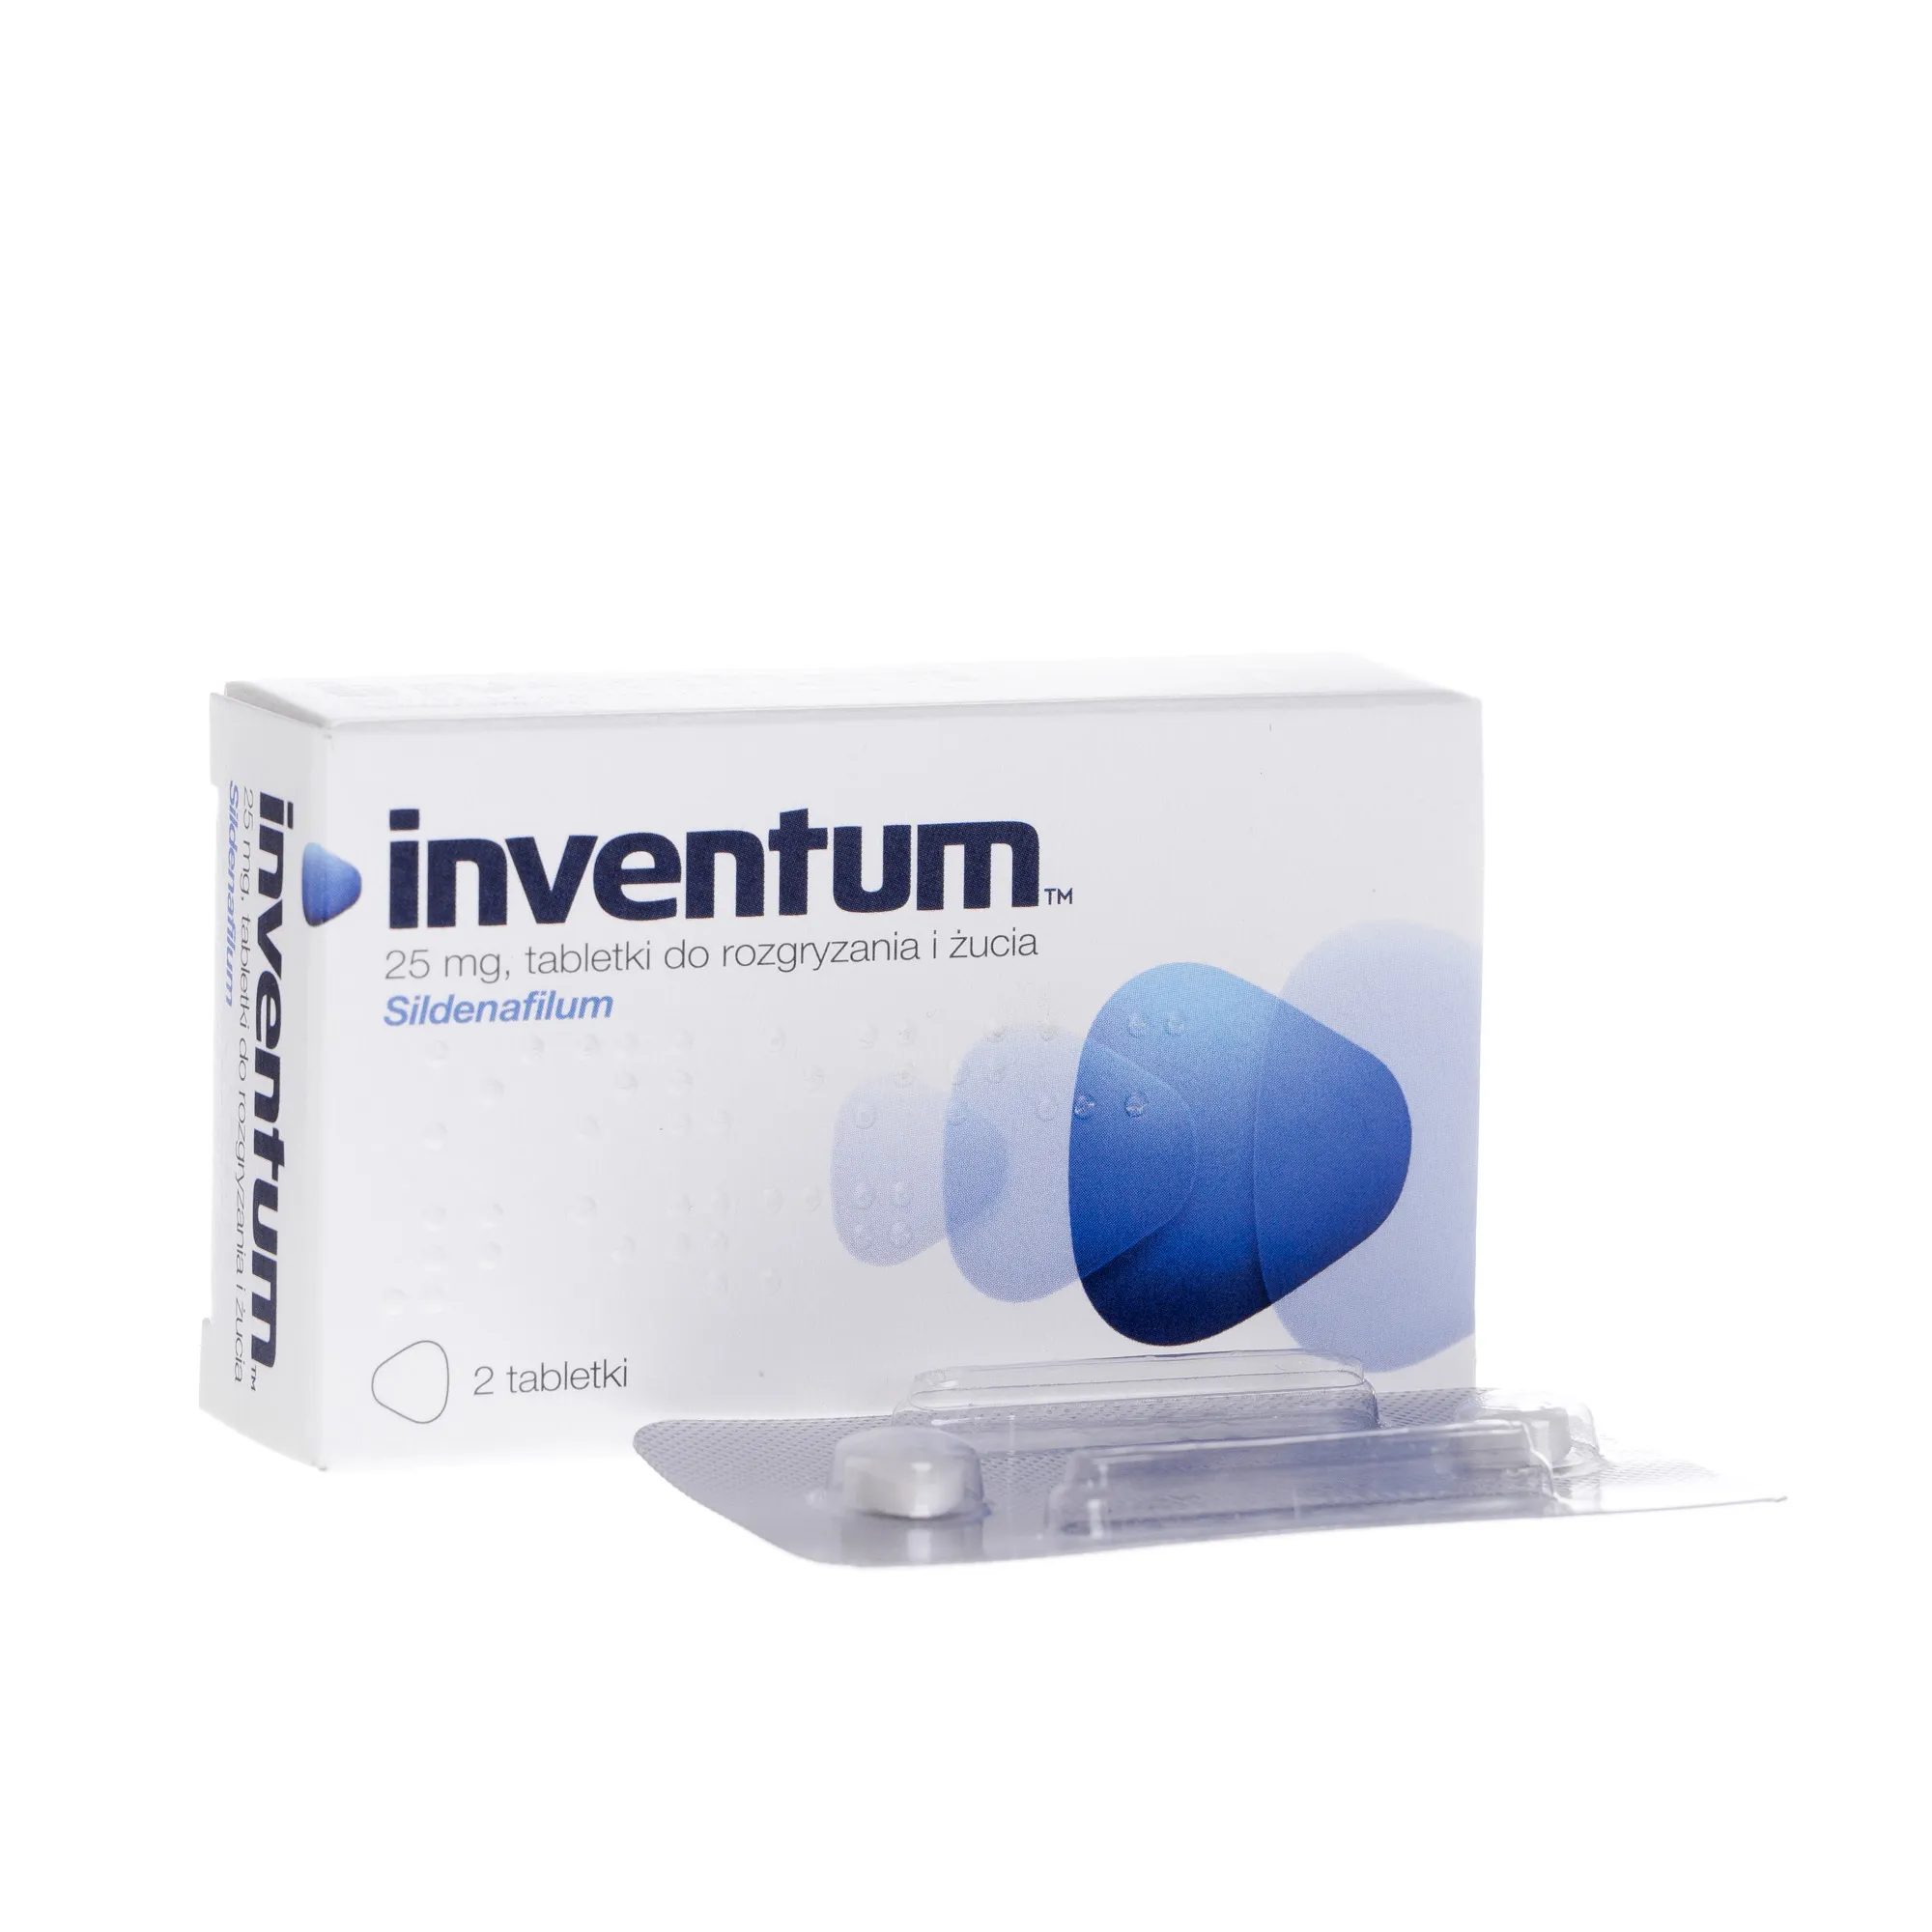 Inventum, 25 mg, 2 tabletki do żucia i rozgryzania 